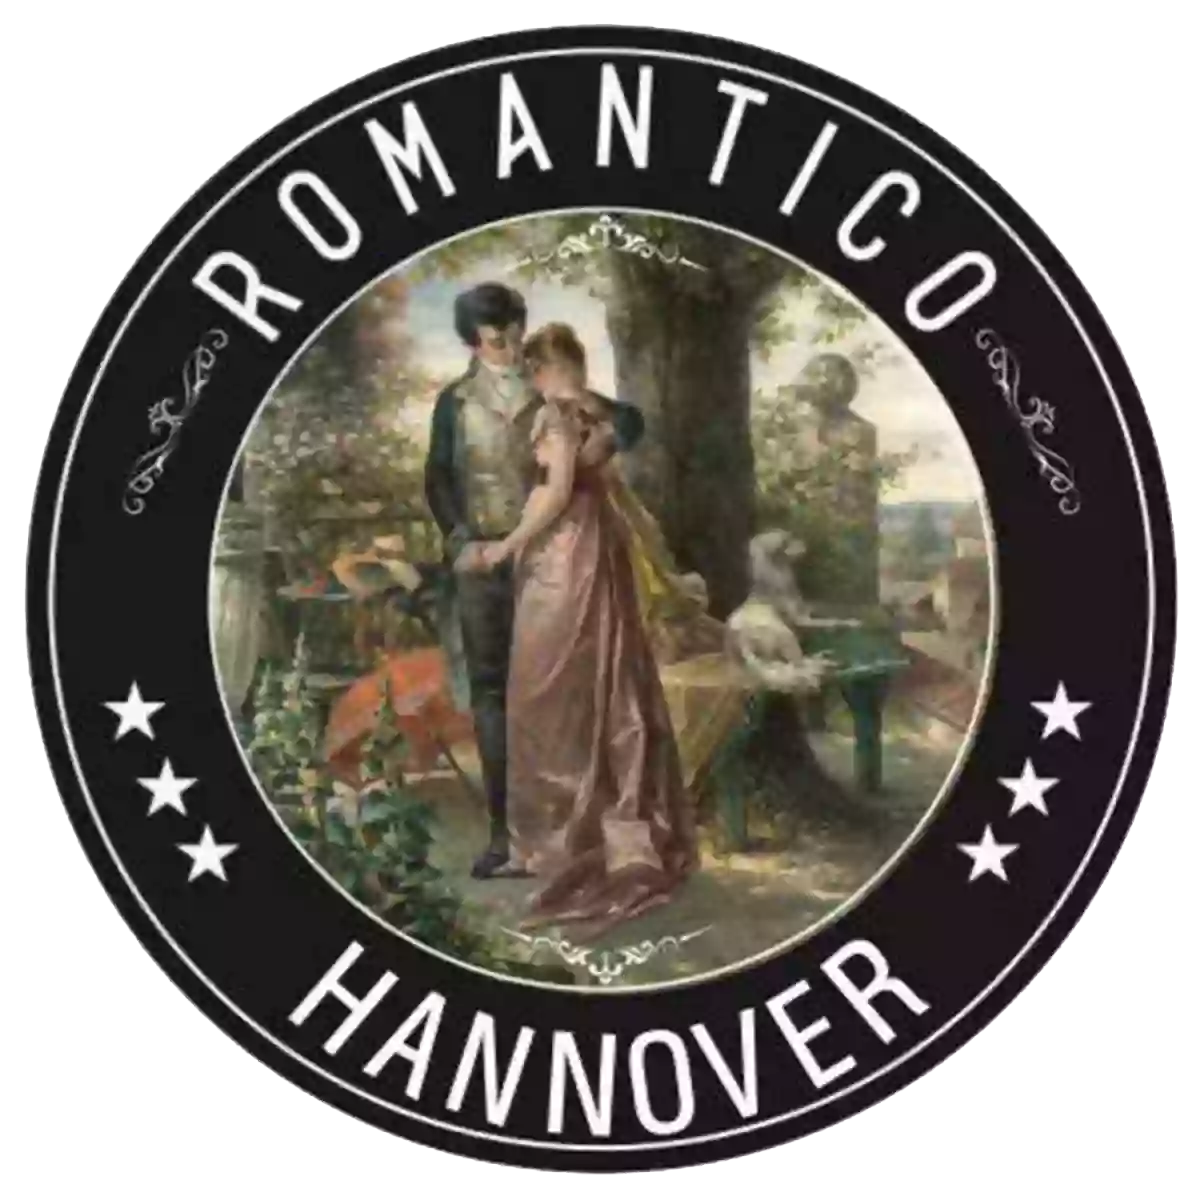 Restaurant Romantico